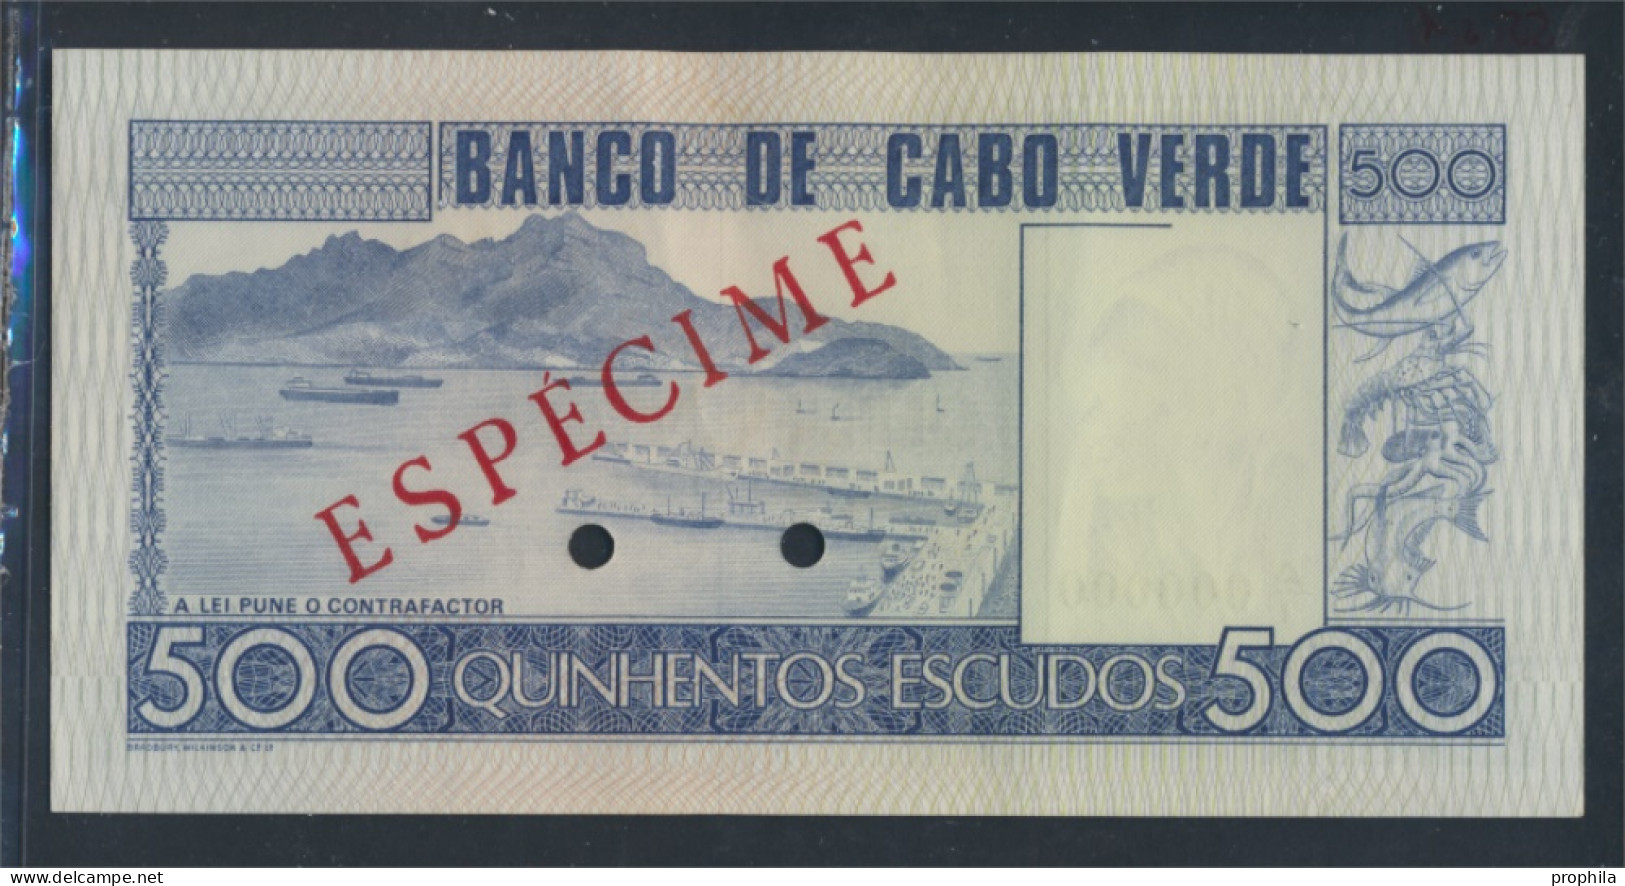 Kap Verde Pick-Nr: 55s1 Bankfrisch 1977 500 Escudos (9810998 - Cap Vert